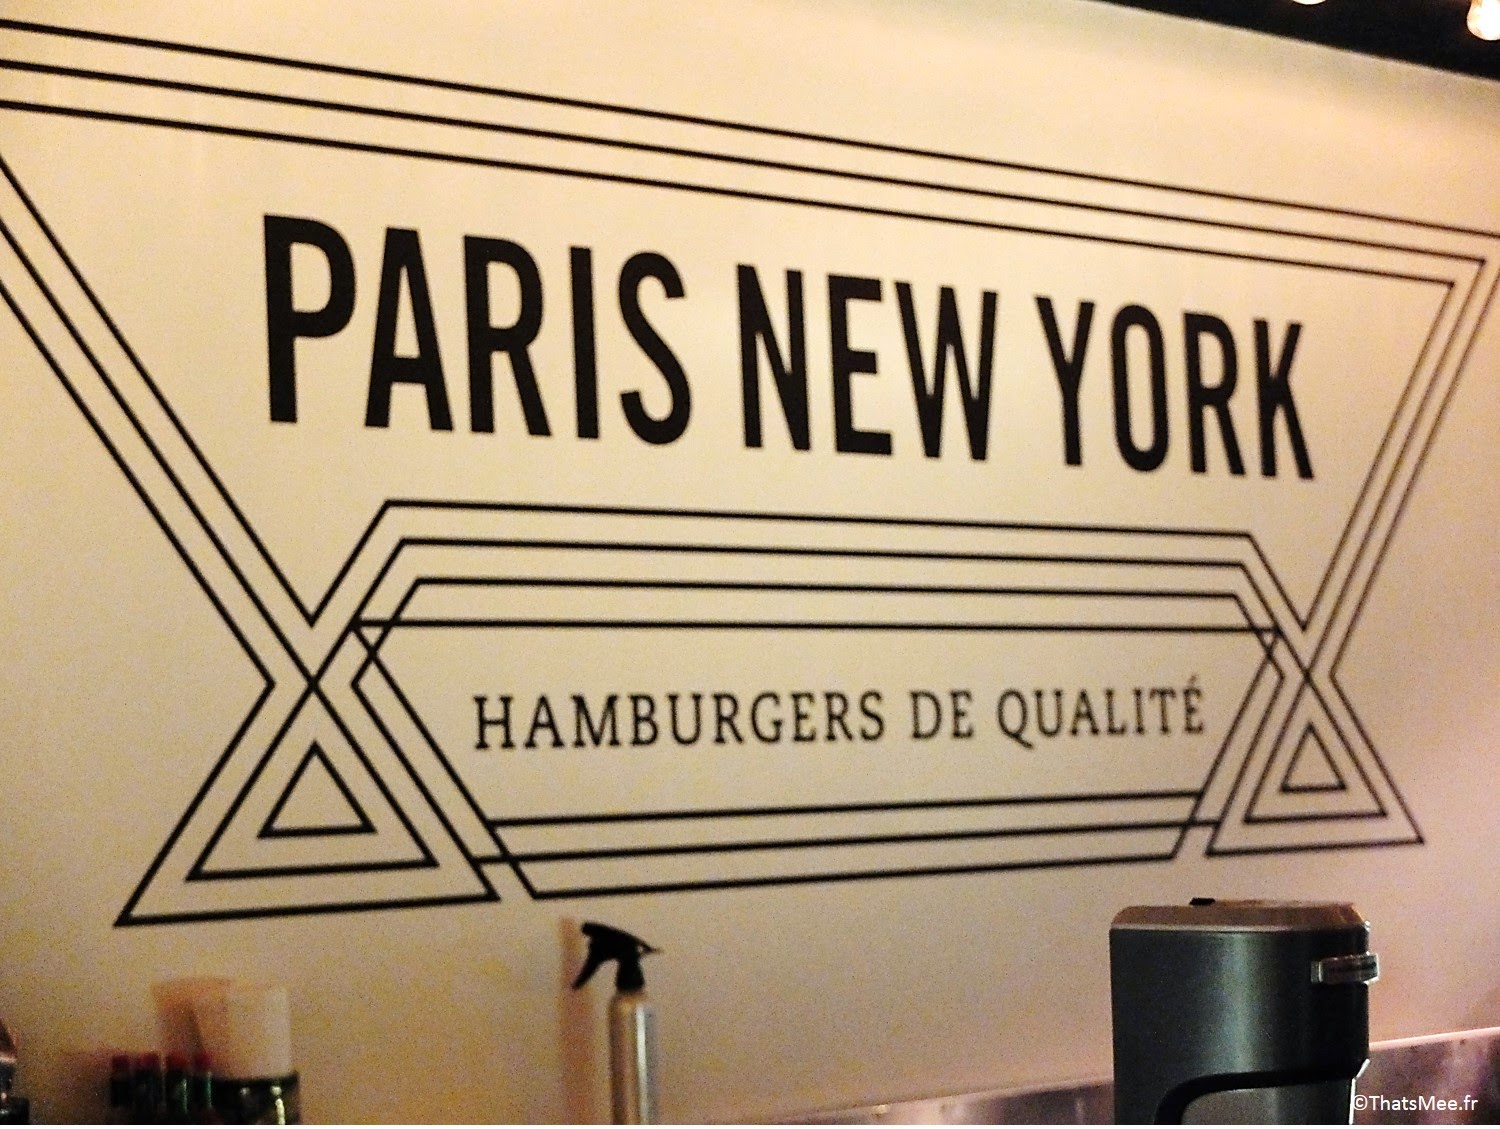 Paris New-York, Burgers de qualité à Paris hamburger bon rapport qualité-prix